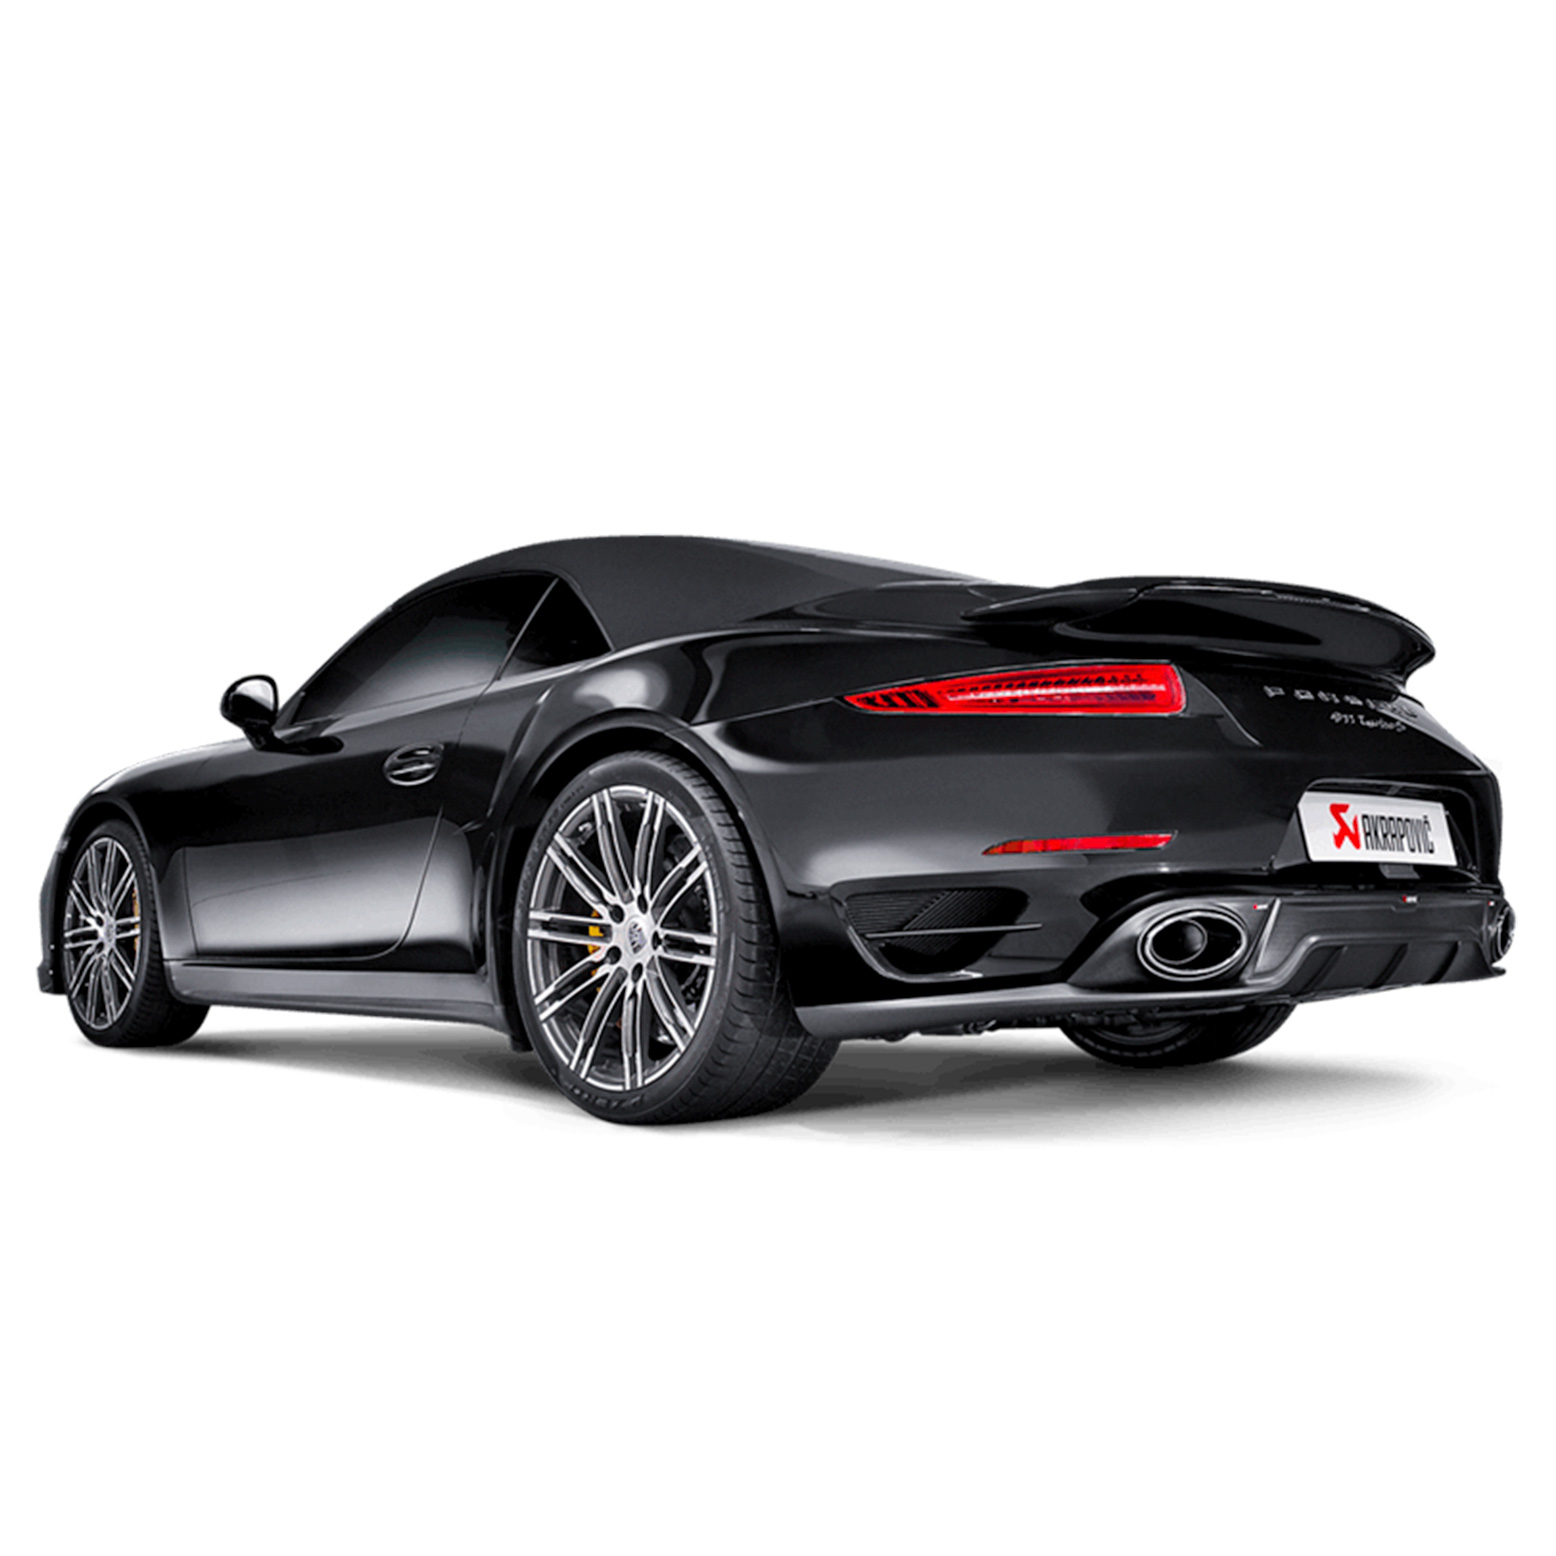 Porsche Akrapovic Slip-On Line (Titanium) Exhaust with Carbon / Titanium Tips 911 (991.1) Turbo / Turbo S